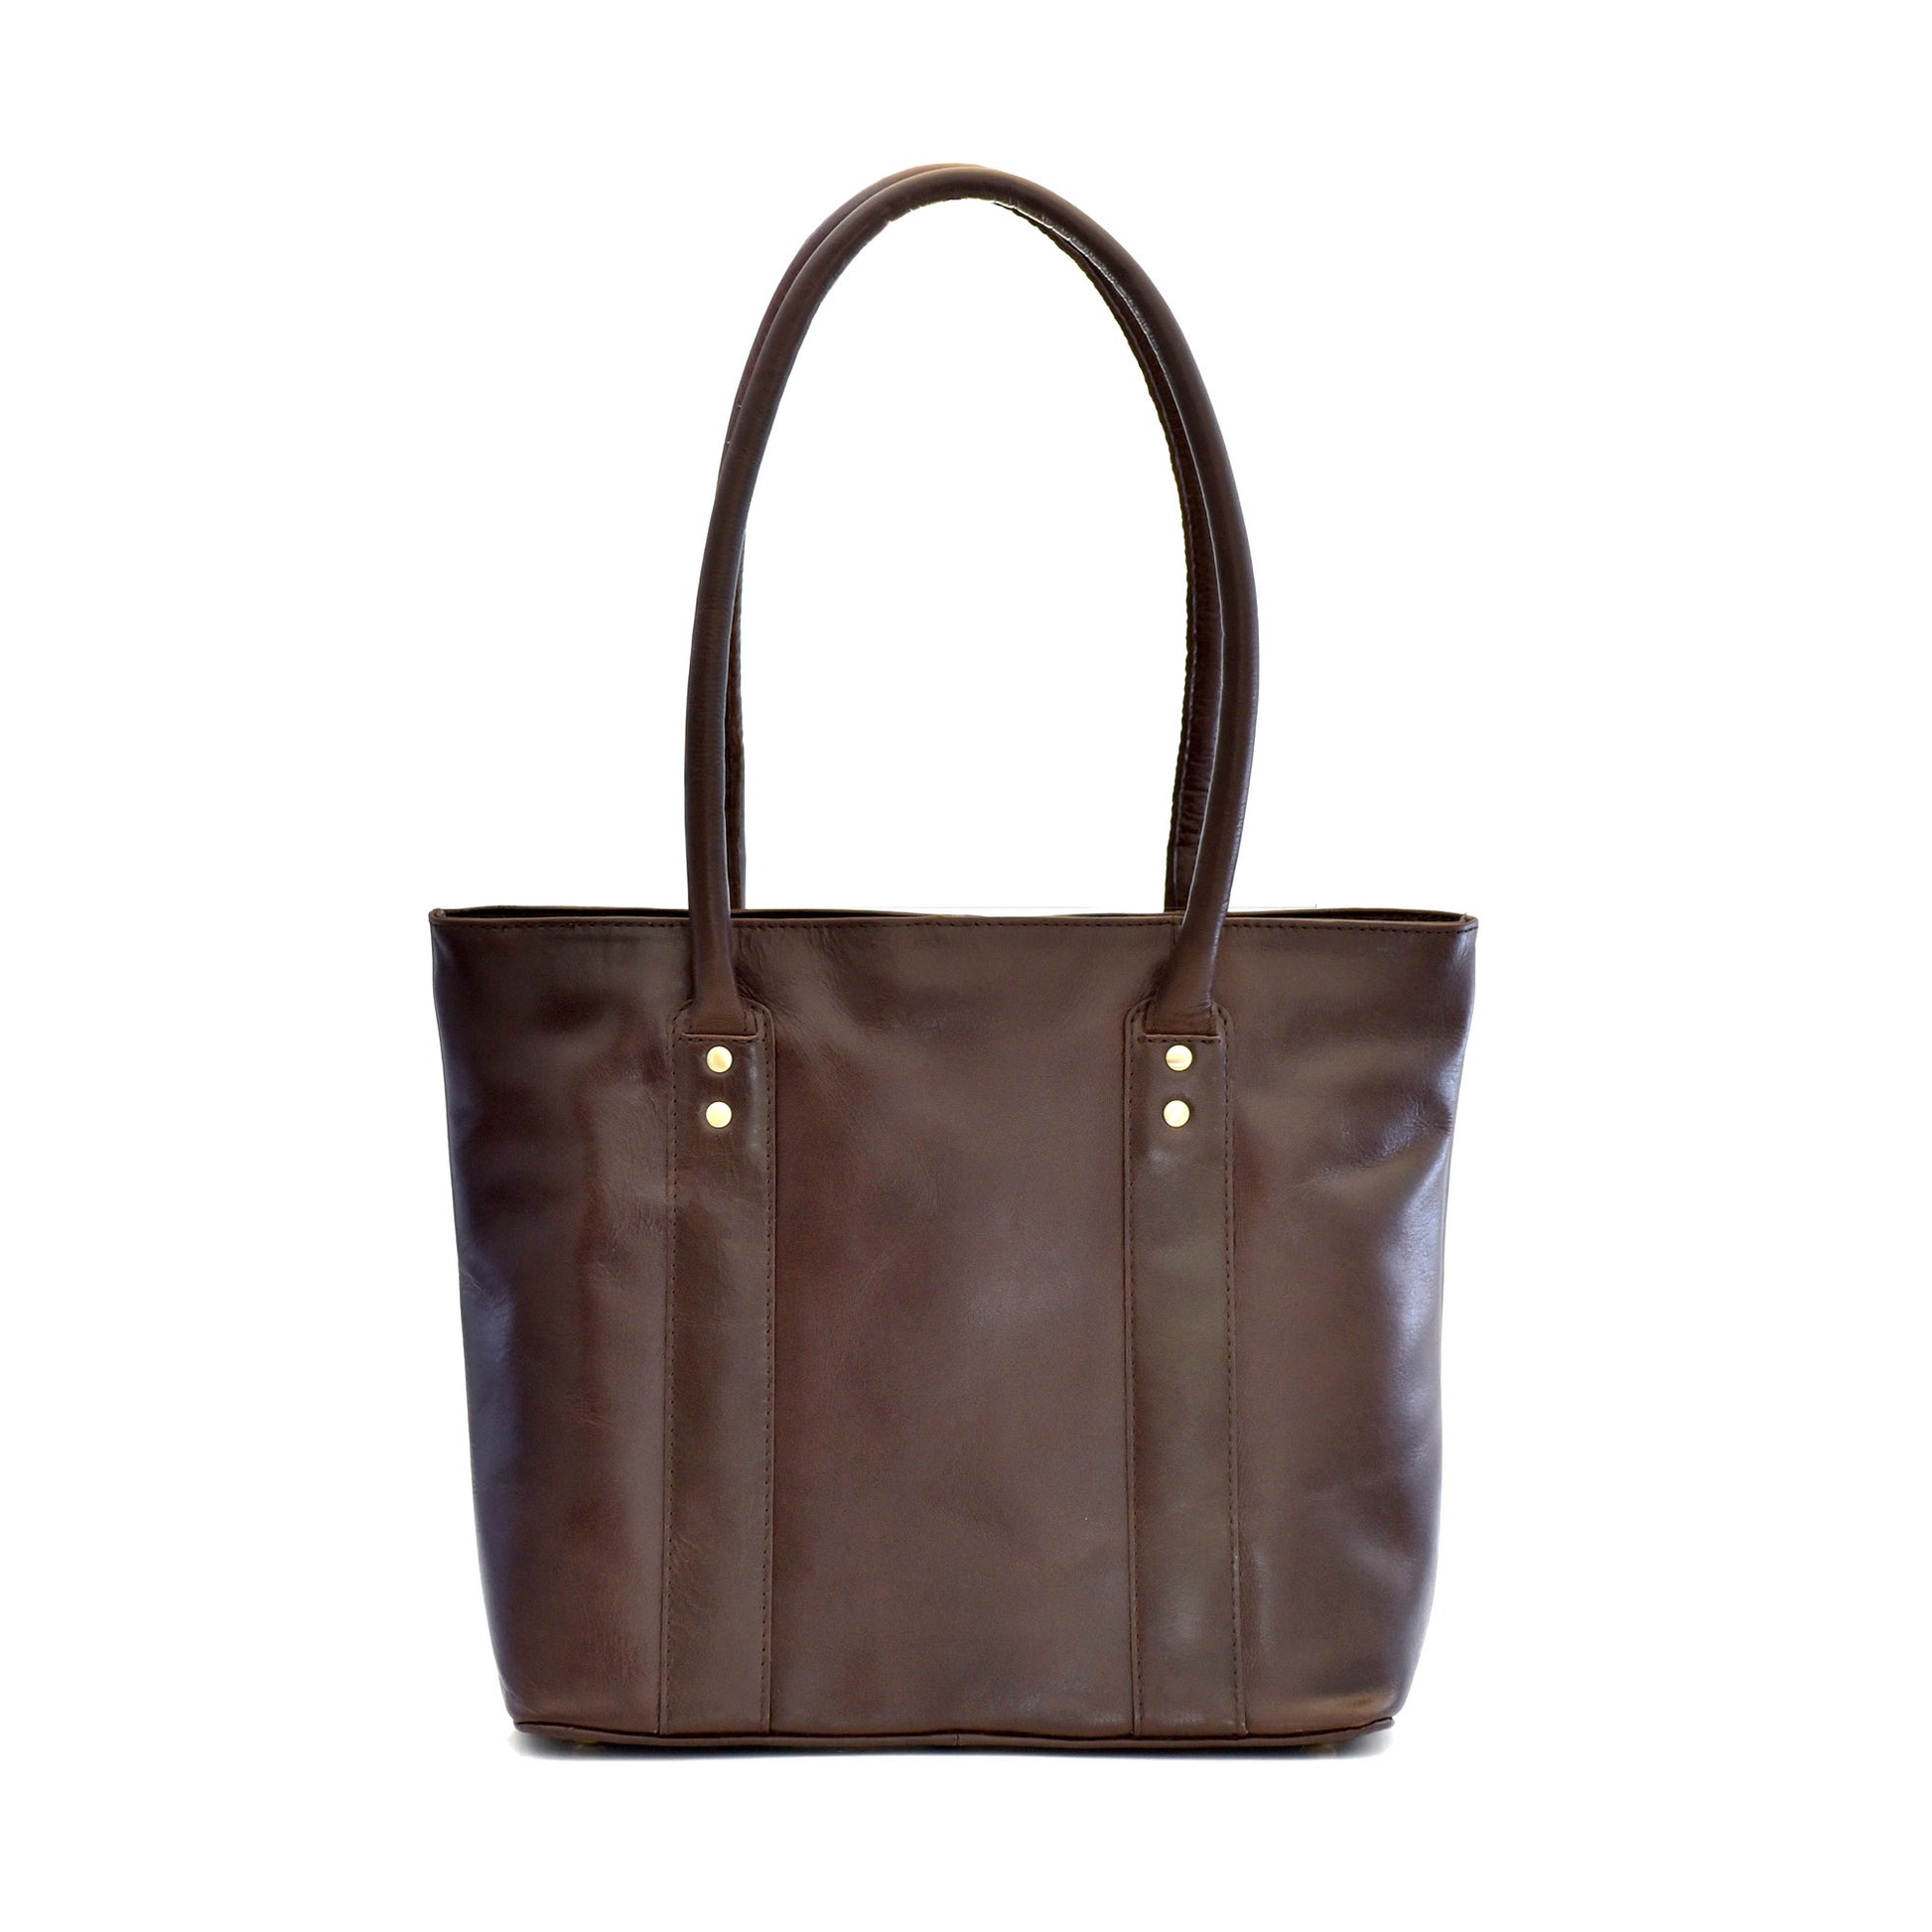 Style n Craft 392004 Ladies Tote Bag in Full Grain Dark Brown Leather - Back View